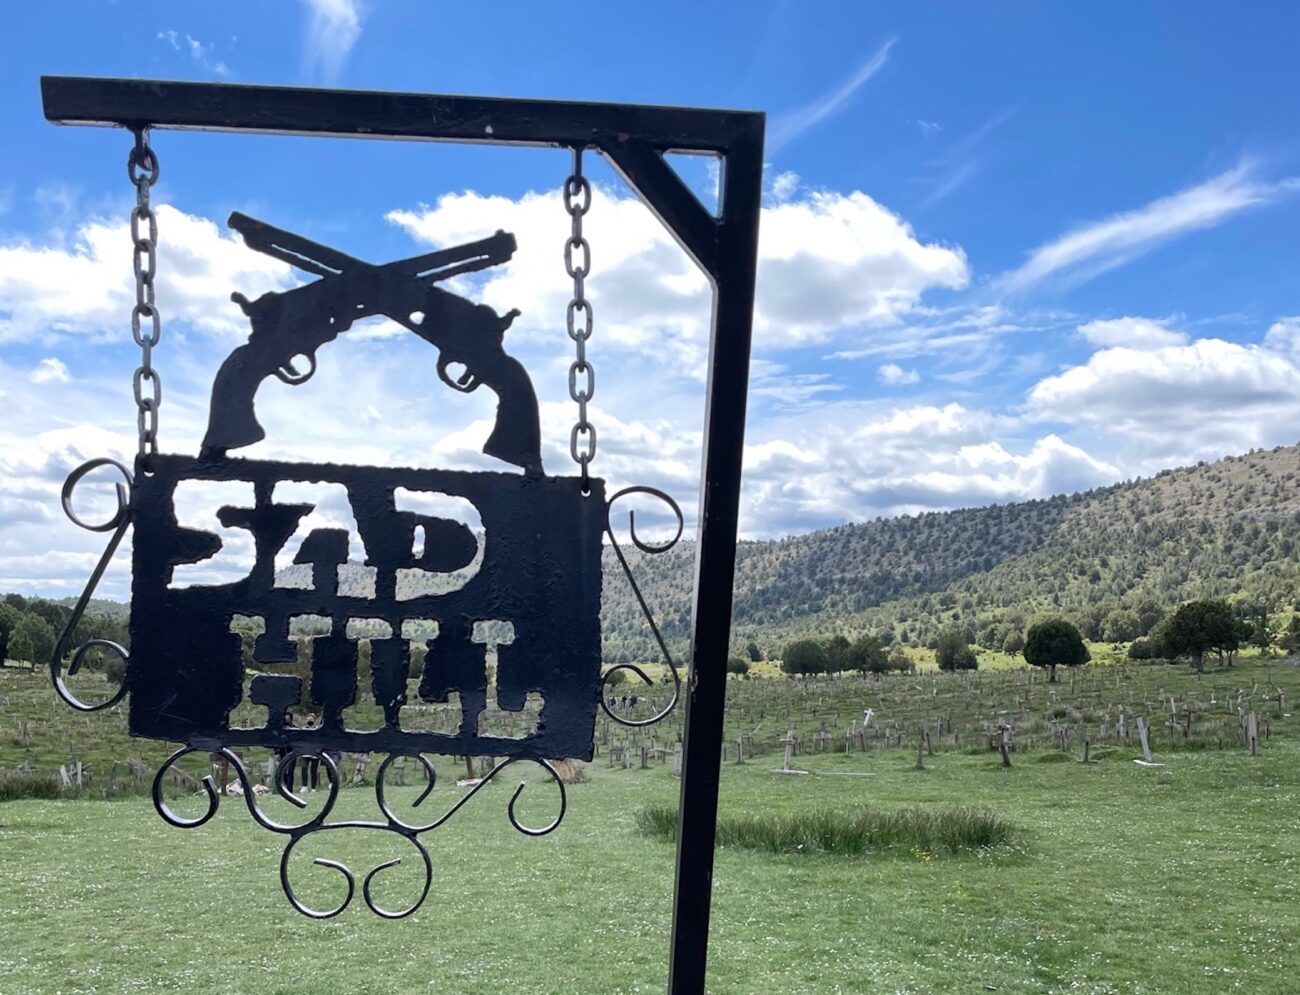 El cementerio de Sad Hill recupera su lugar como destino turístico de película